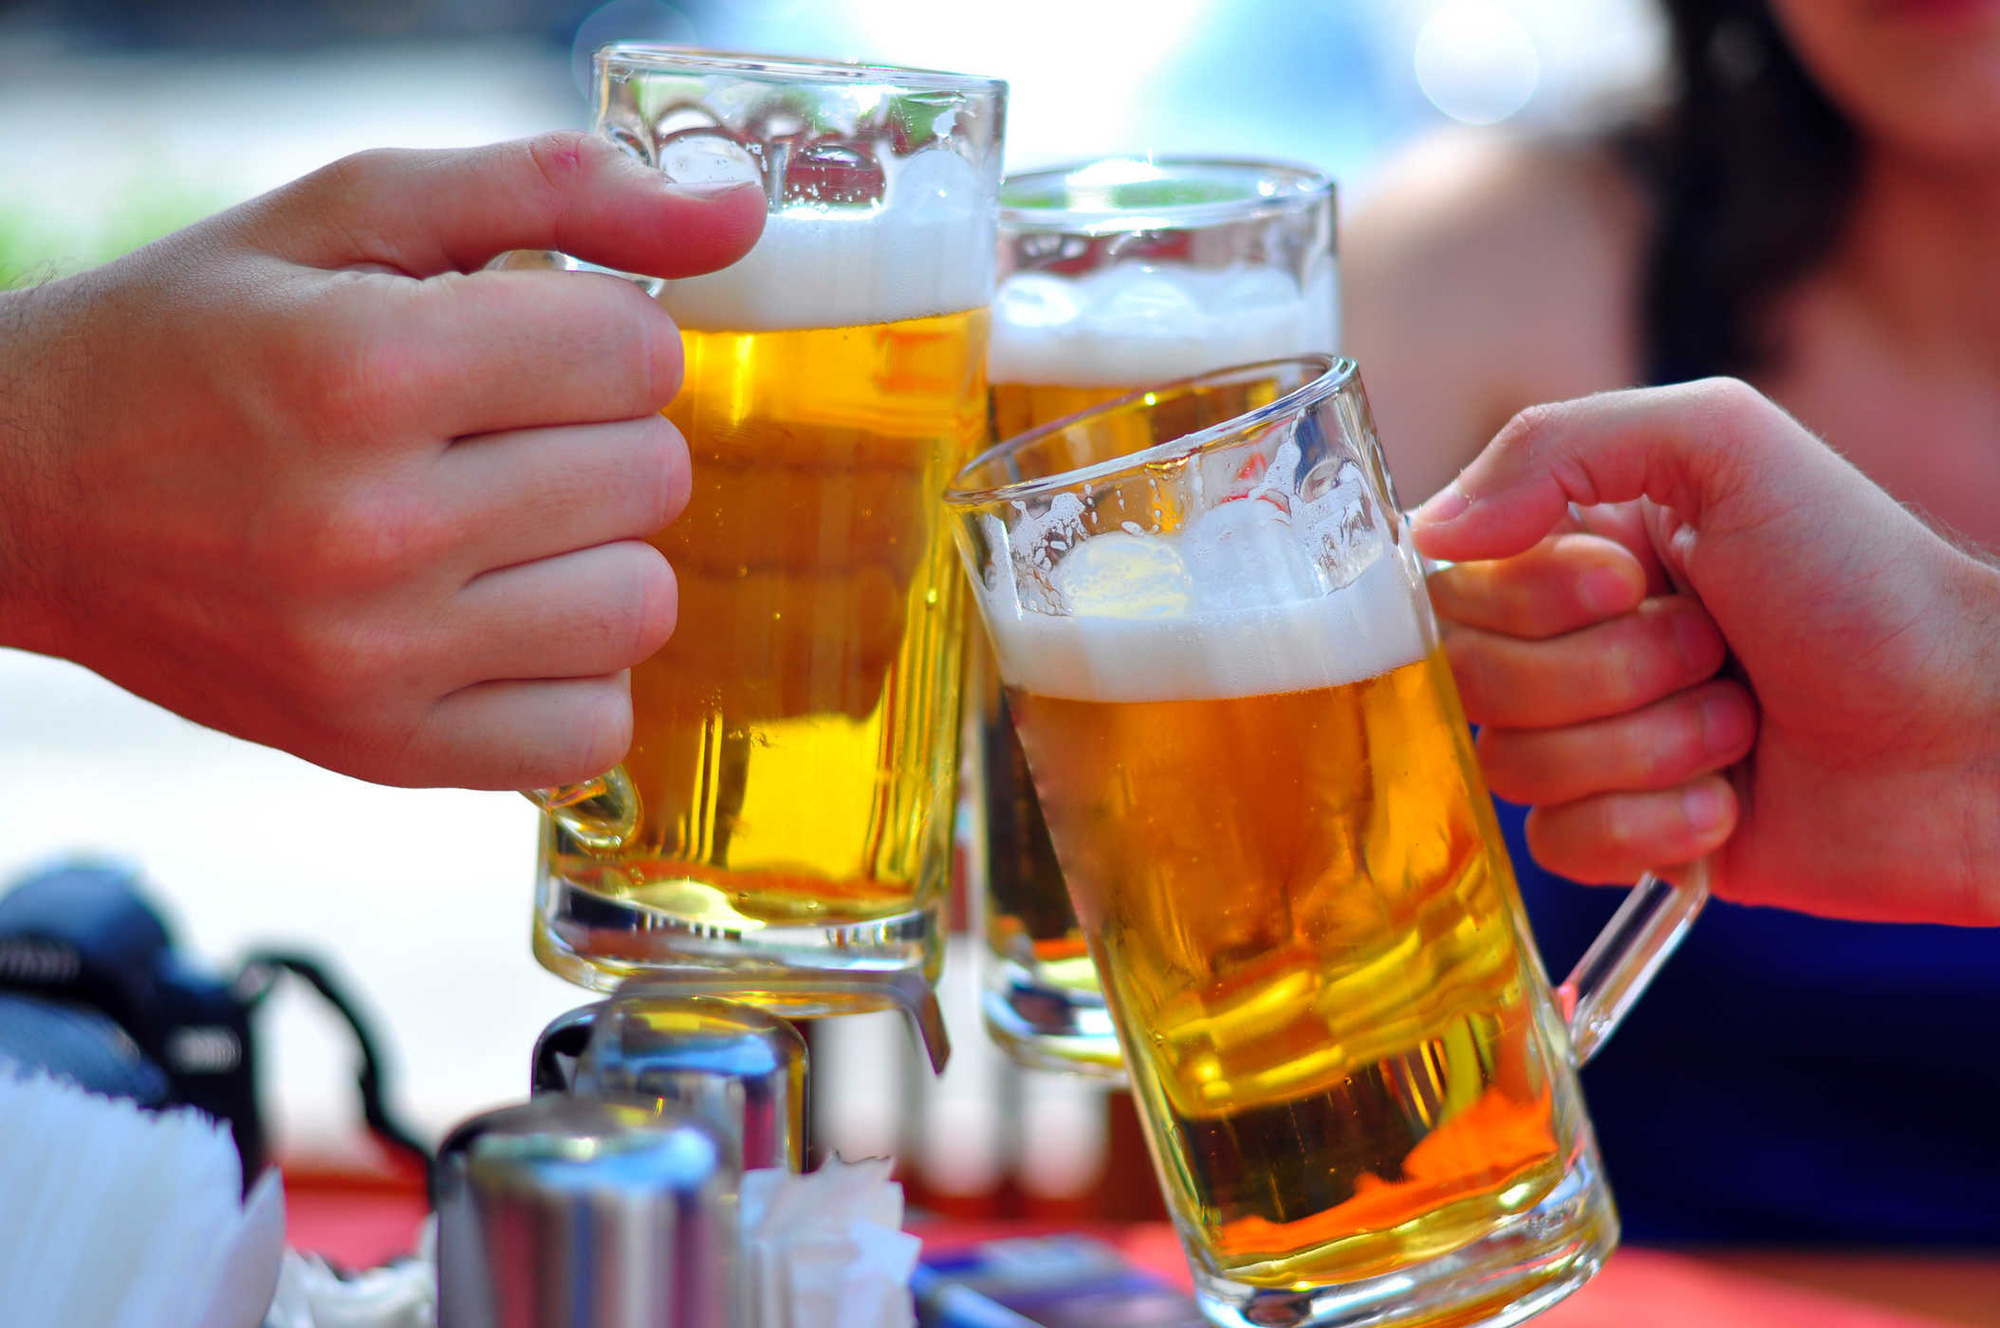 Khám phá khoa học của nồng độ cồn trong bia! Chỉ với vài phút tìm hiểu, bạn sẽ hiểu rõ hơn về tác động của nồng độ cồn đến đầu óc và cơ thể con người như thế nào. Và bạn sẽ biết được mức nồng độ cồn trong mỗi ly bia thay đổi như thế nào.